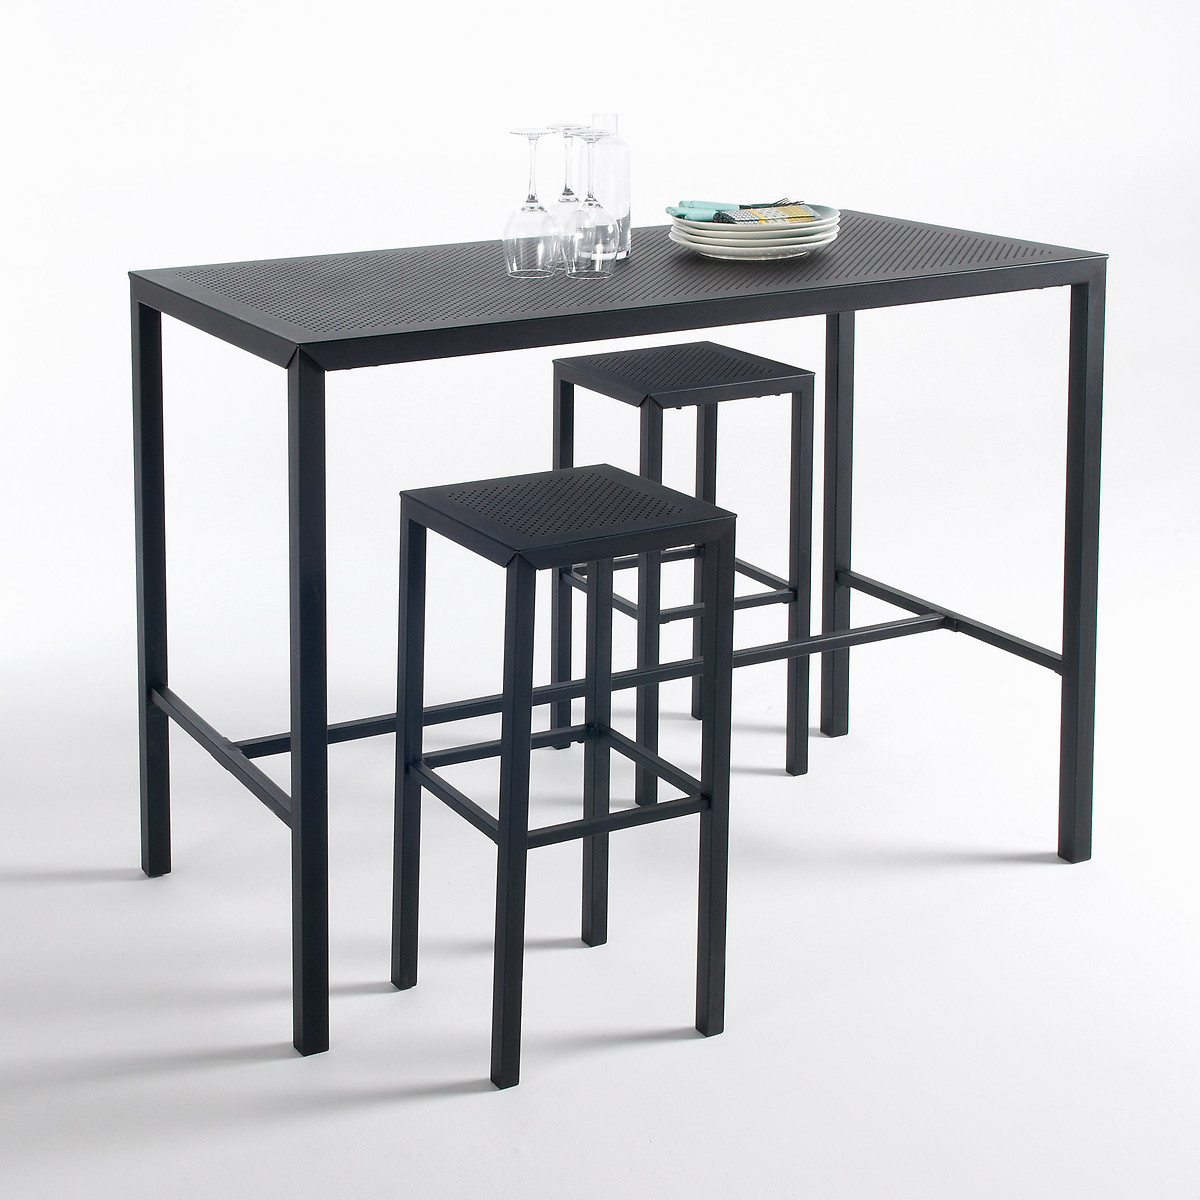 Столик высокий из перфорированного металла Choe единый размер черный столик laredoute столик из лакированного металла romy единый размер черный